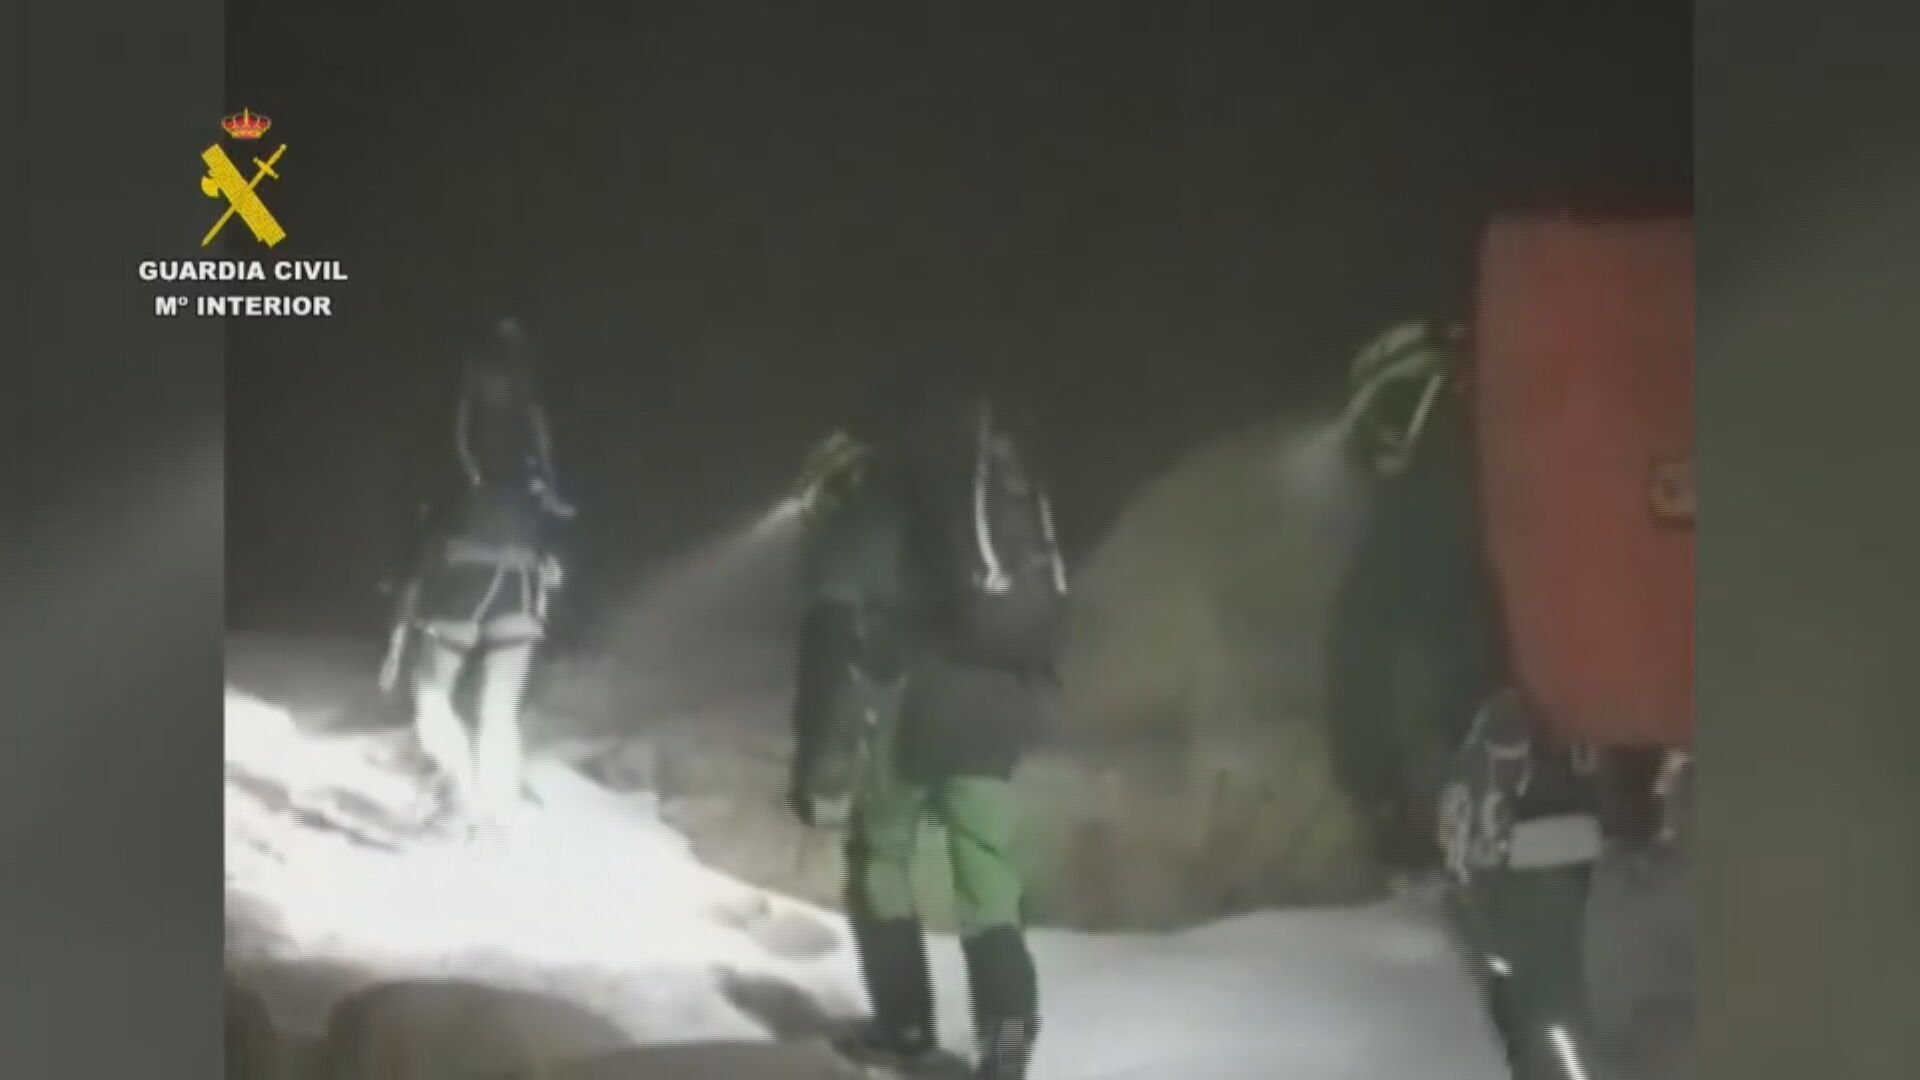 La Guardia Civil rescata a 9 personas en el Pico Almanzor, una de ellas muerta tras una caída de 100 metros